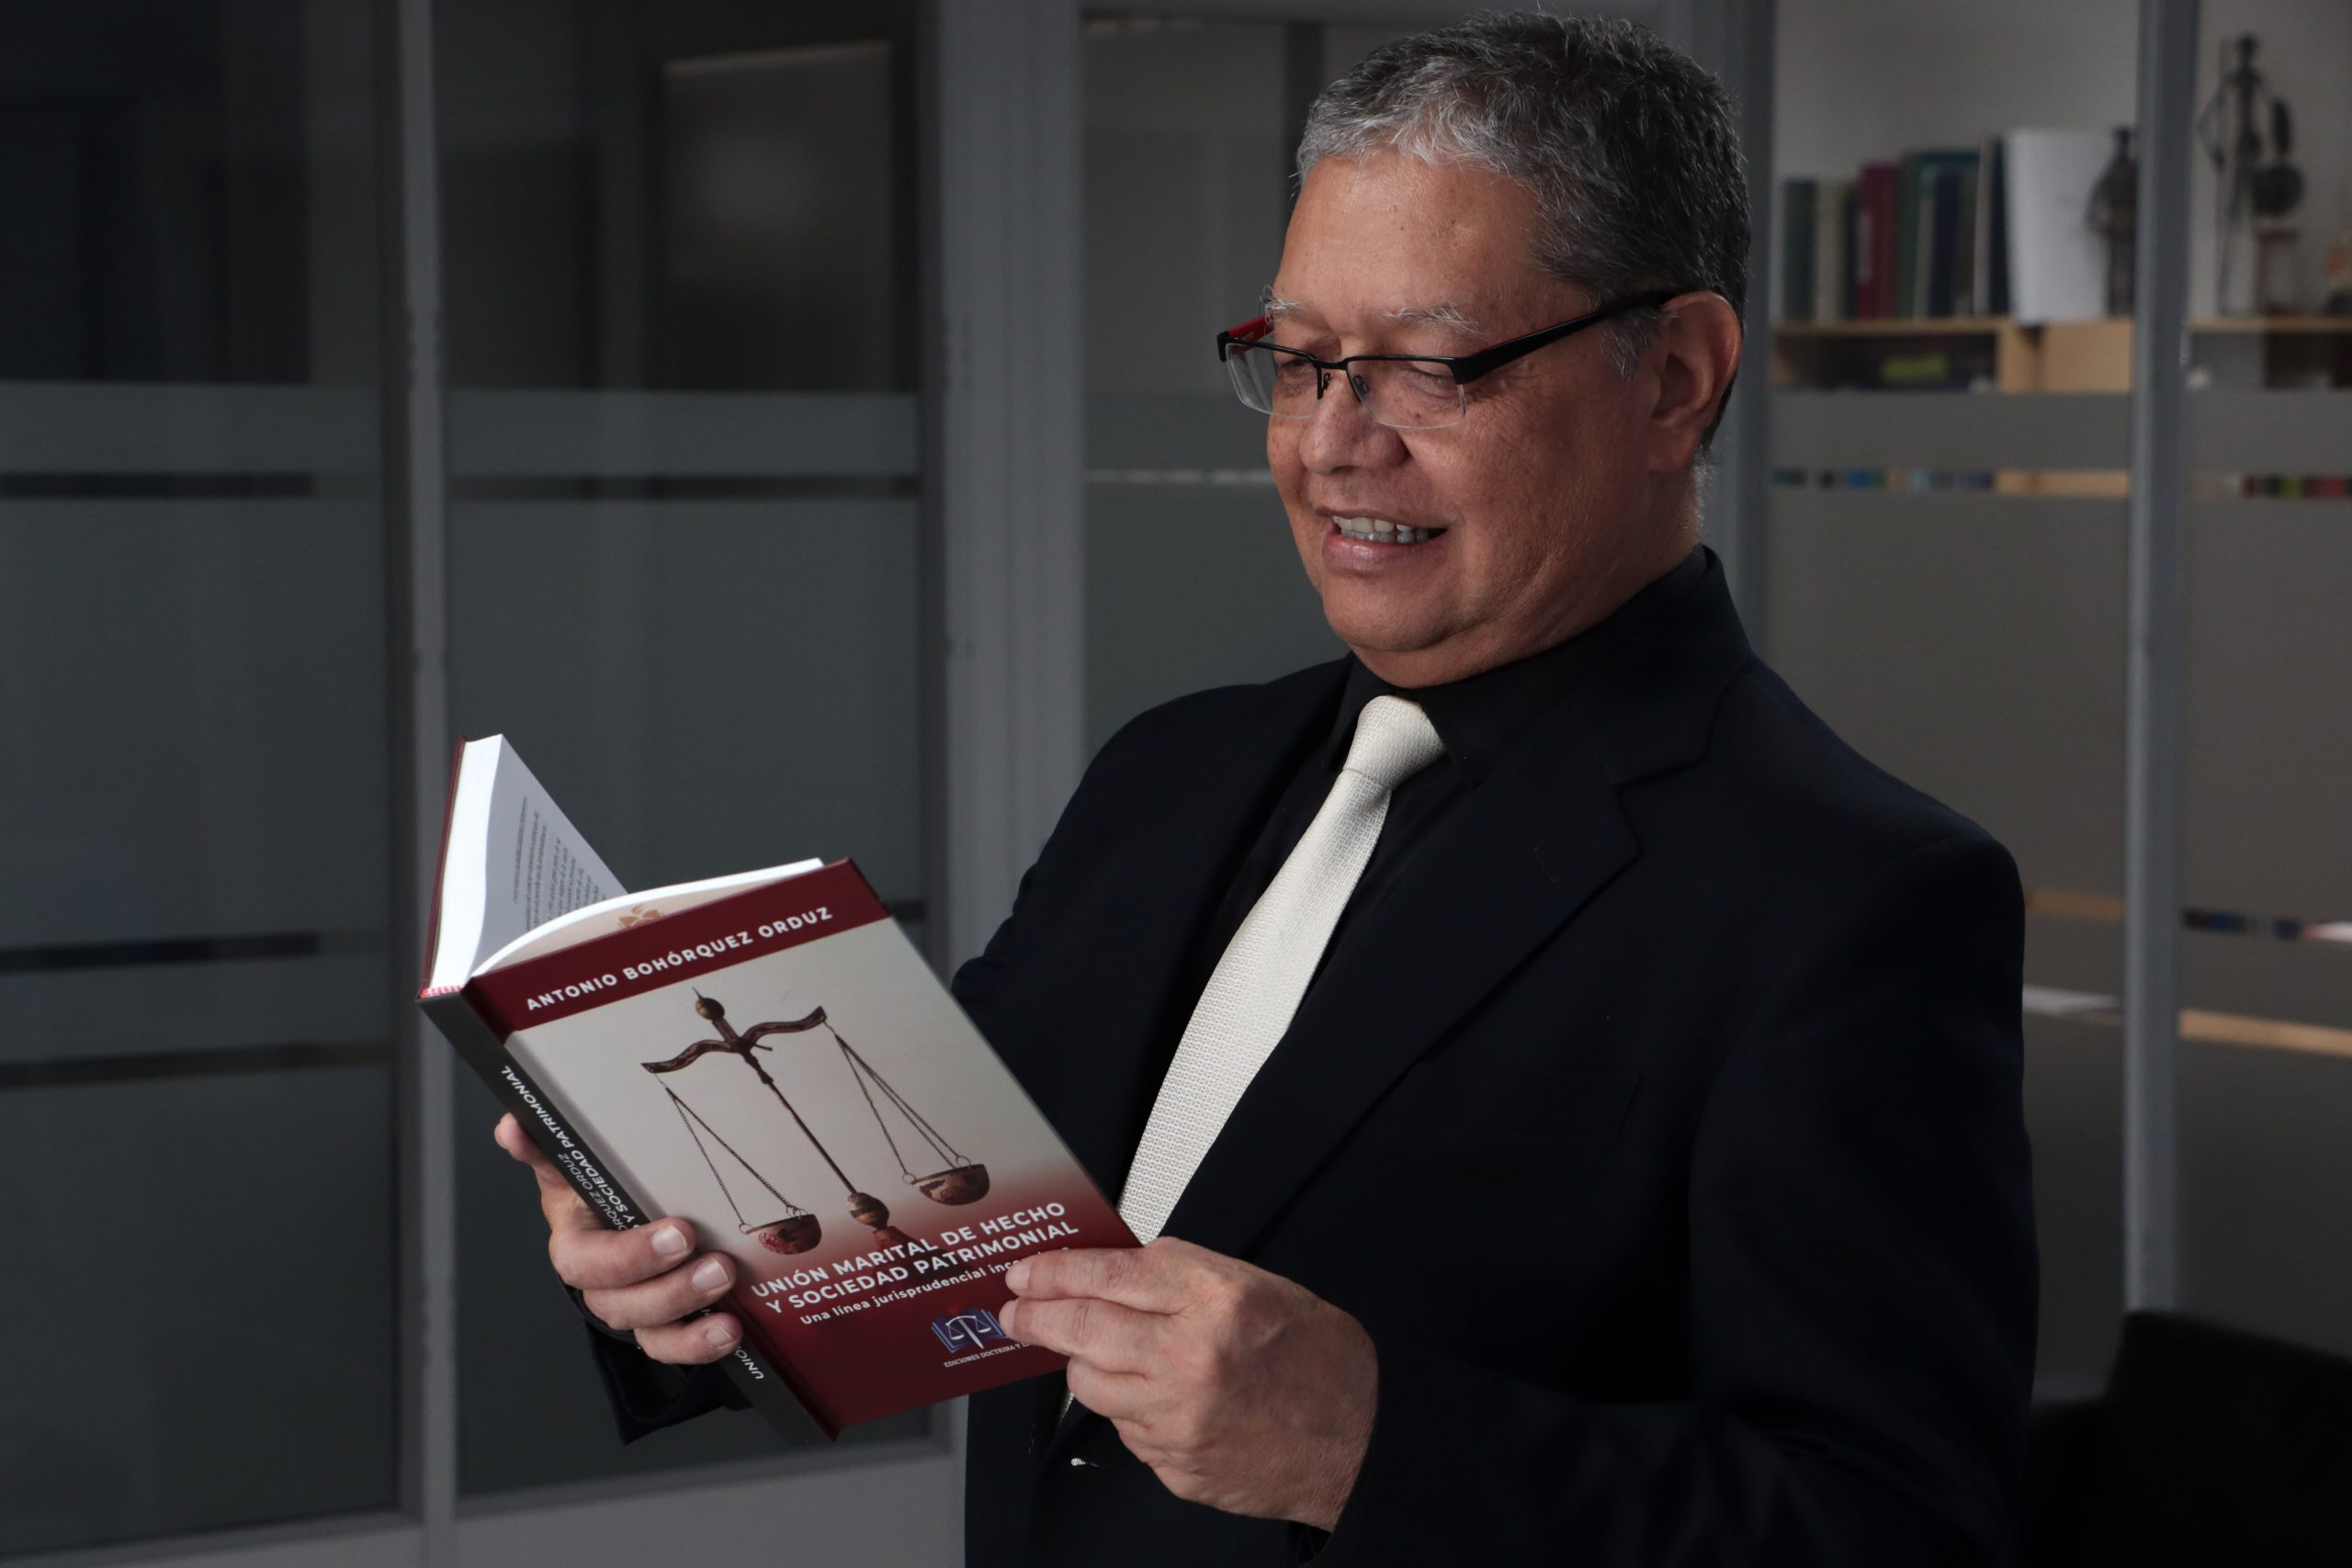 El docente Antonio Bohórquez lanza libro sobre unión marital de hecho